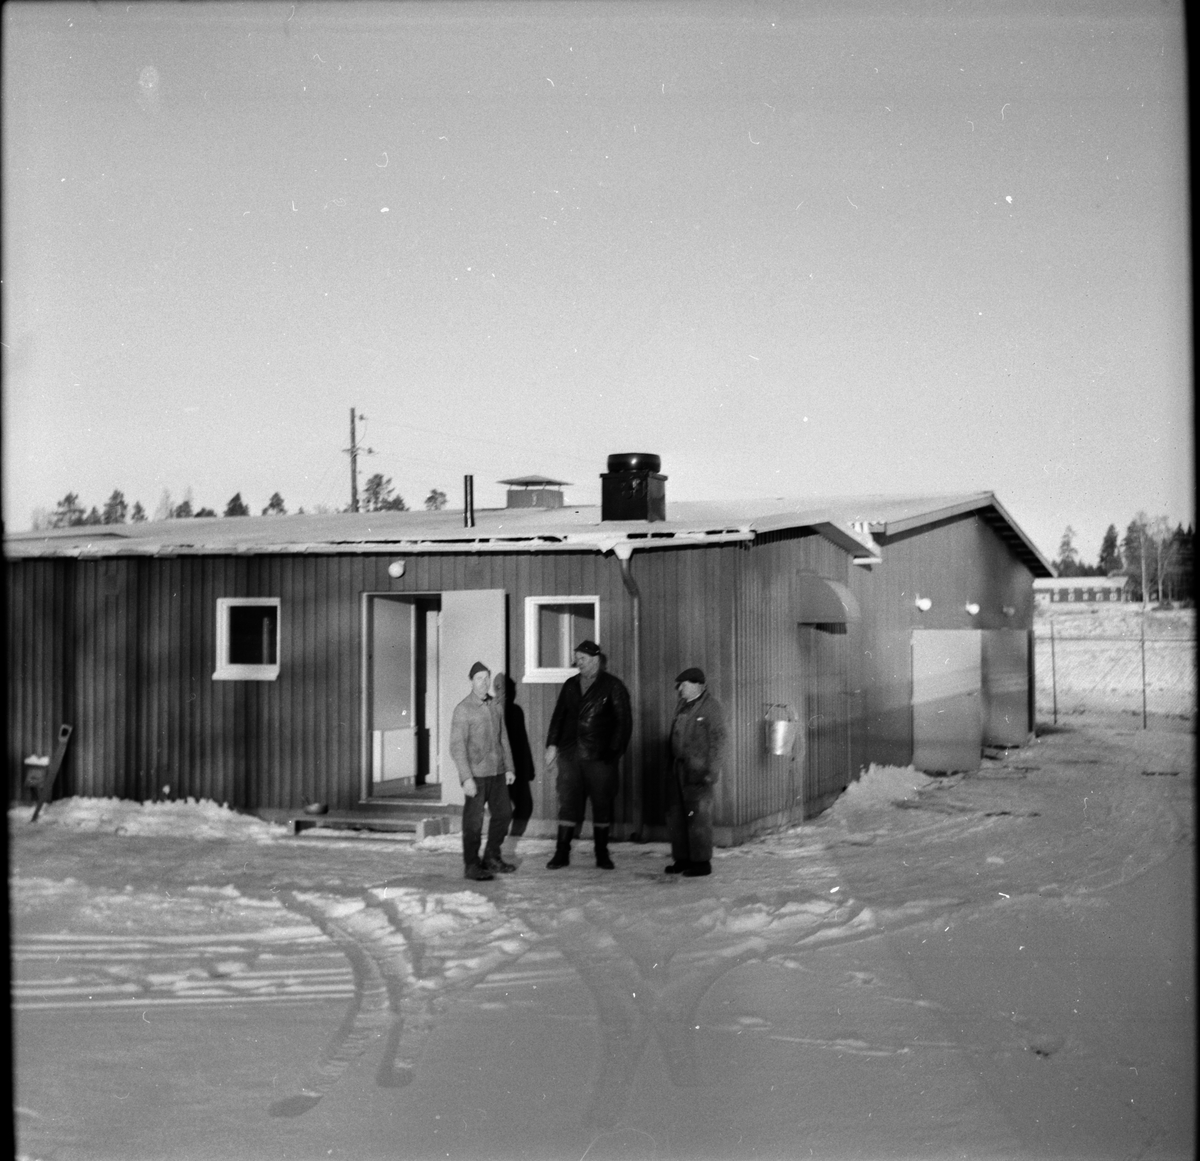 Reparation på reningsverket.
December 1967